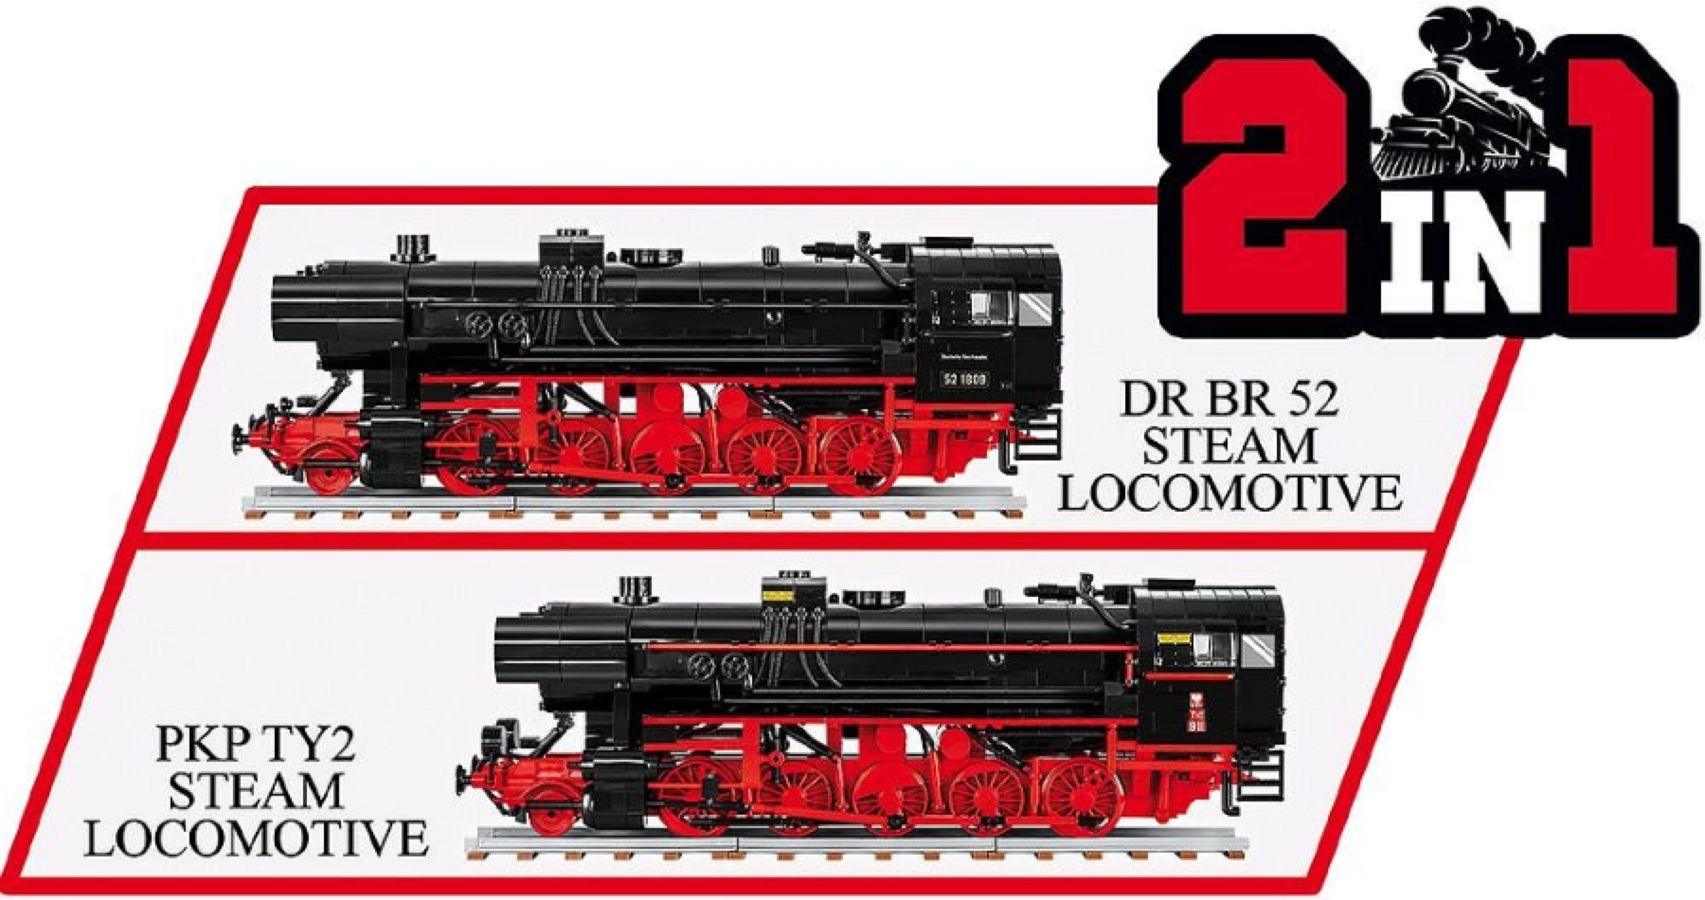 COB6283 Trains - DR BR 52/TY2 Steam Locomotive 1:35 Scale [1723 Pcs] - Cobi - Titan Pop Culture